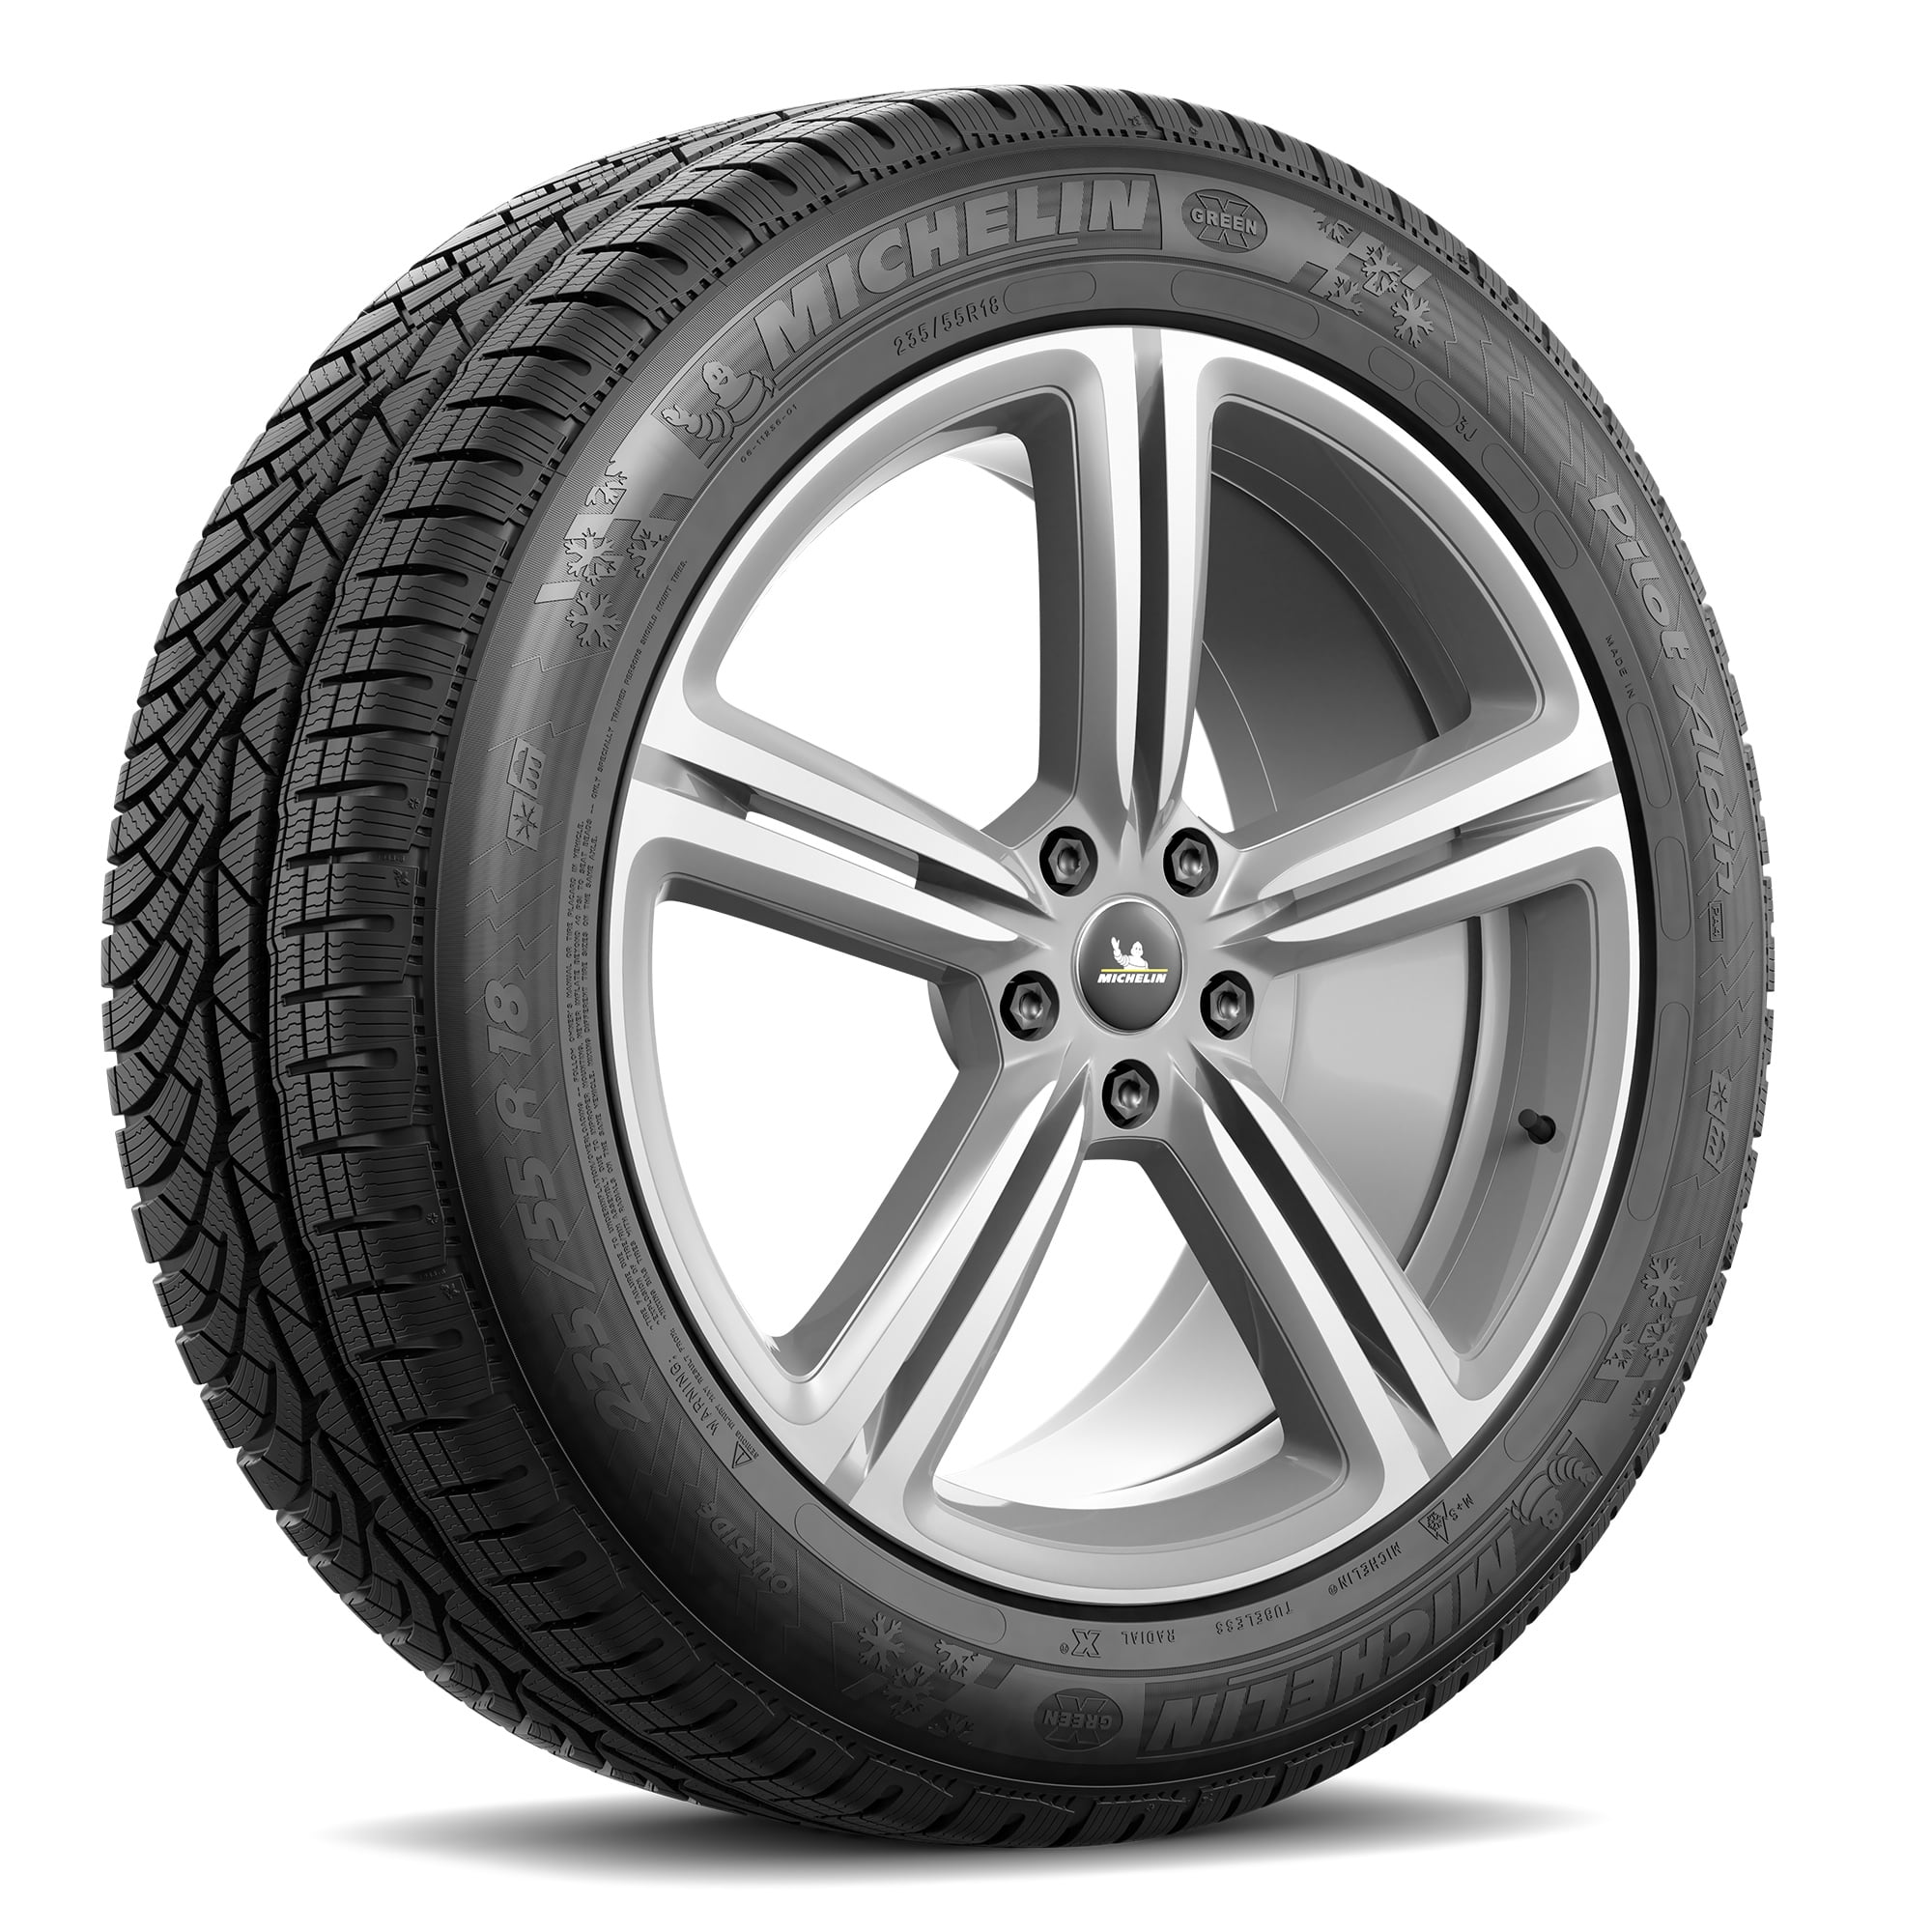 Michelin Latitude Alpin Winter 255/55-18 109 H Tire